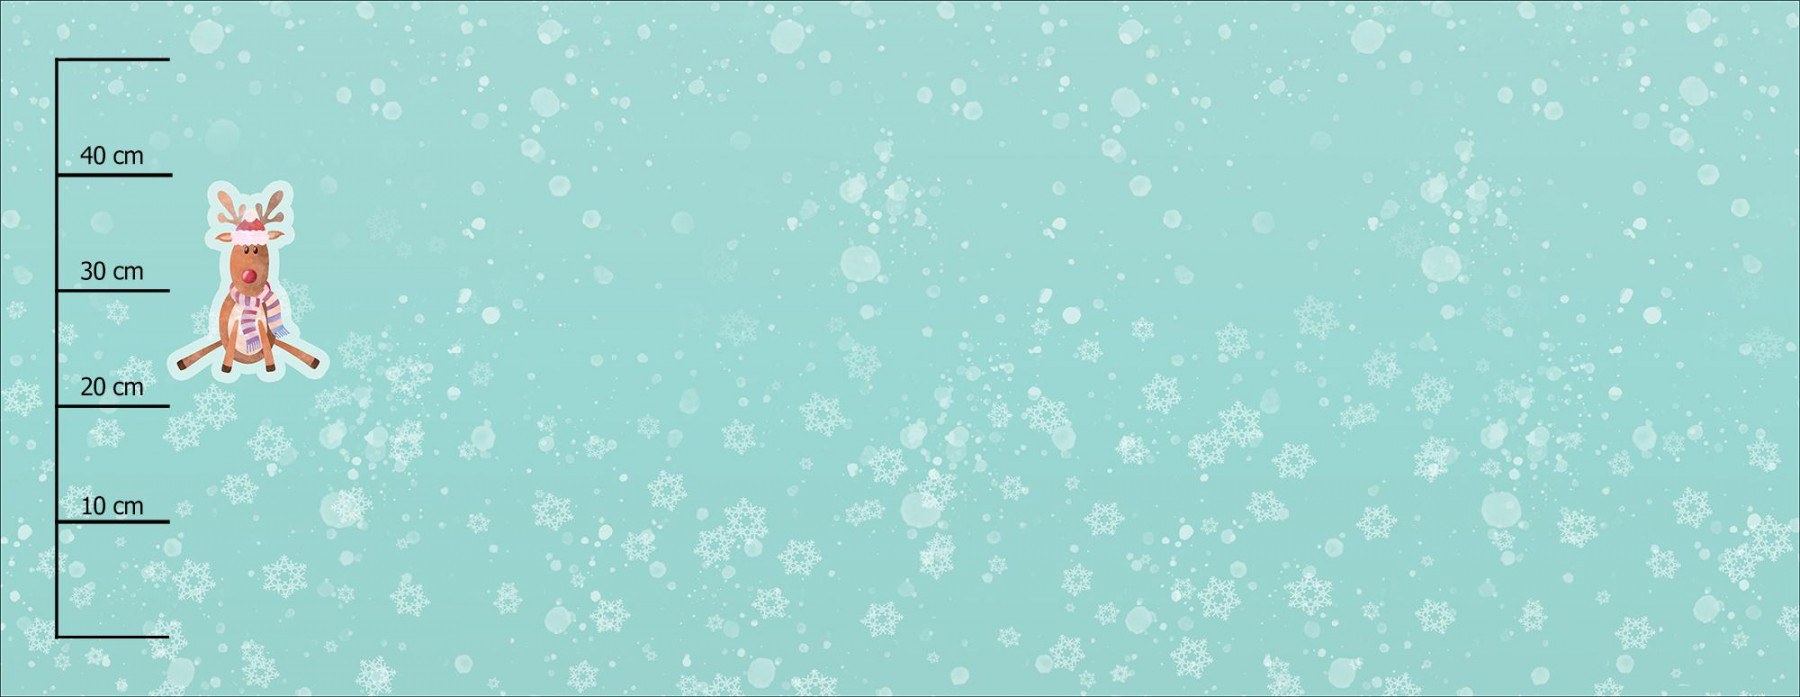 REINDEER / SNOWFLAKES (CHRISTMAS REINDEERS) - SINGLE JERSEY PANORAMIC PANEL 